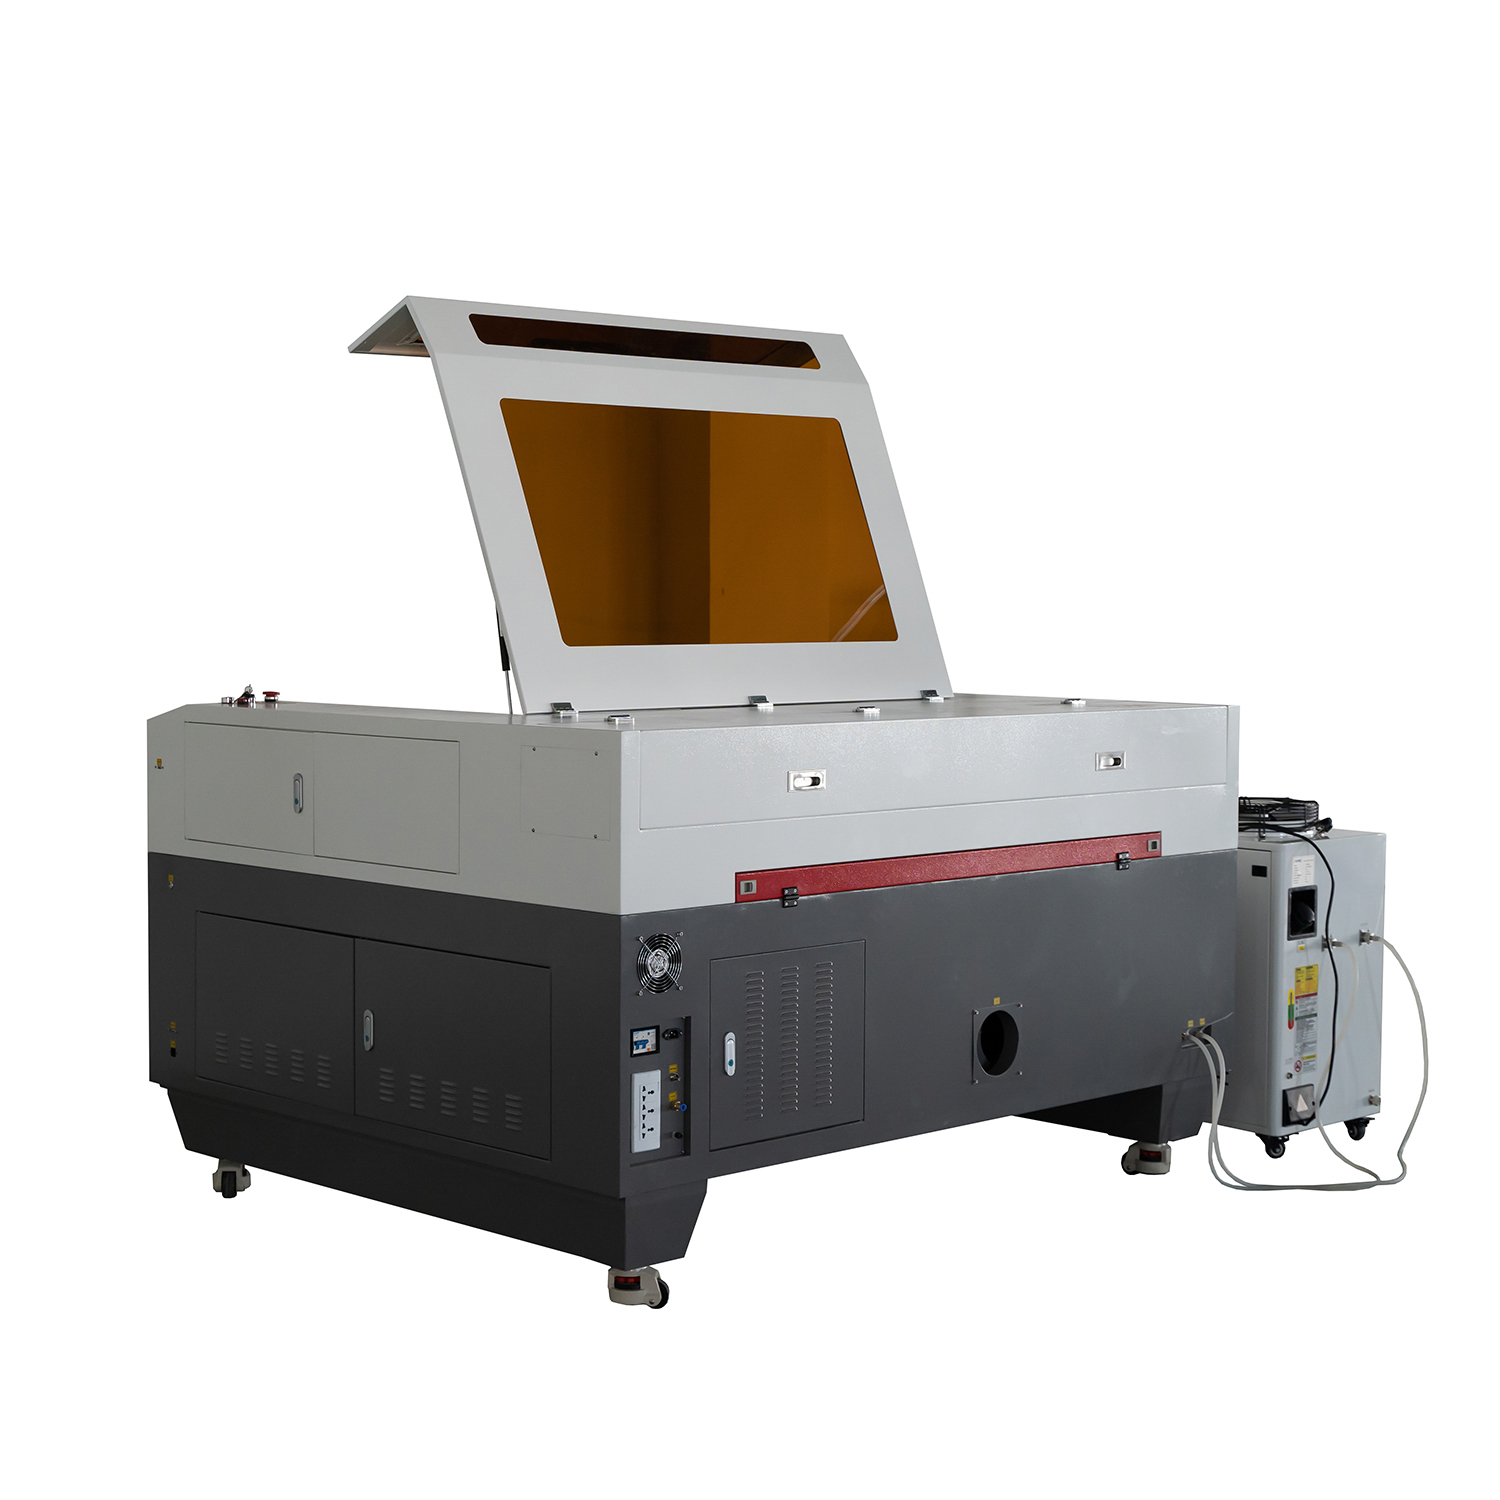 51,18 "X35.43" 1390 CO2 Mieszana maszyna do cięcia laserowego z przemysłowym agregatem chłodniczym